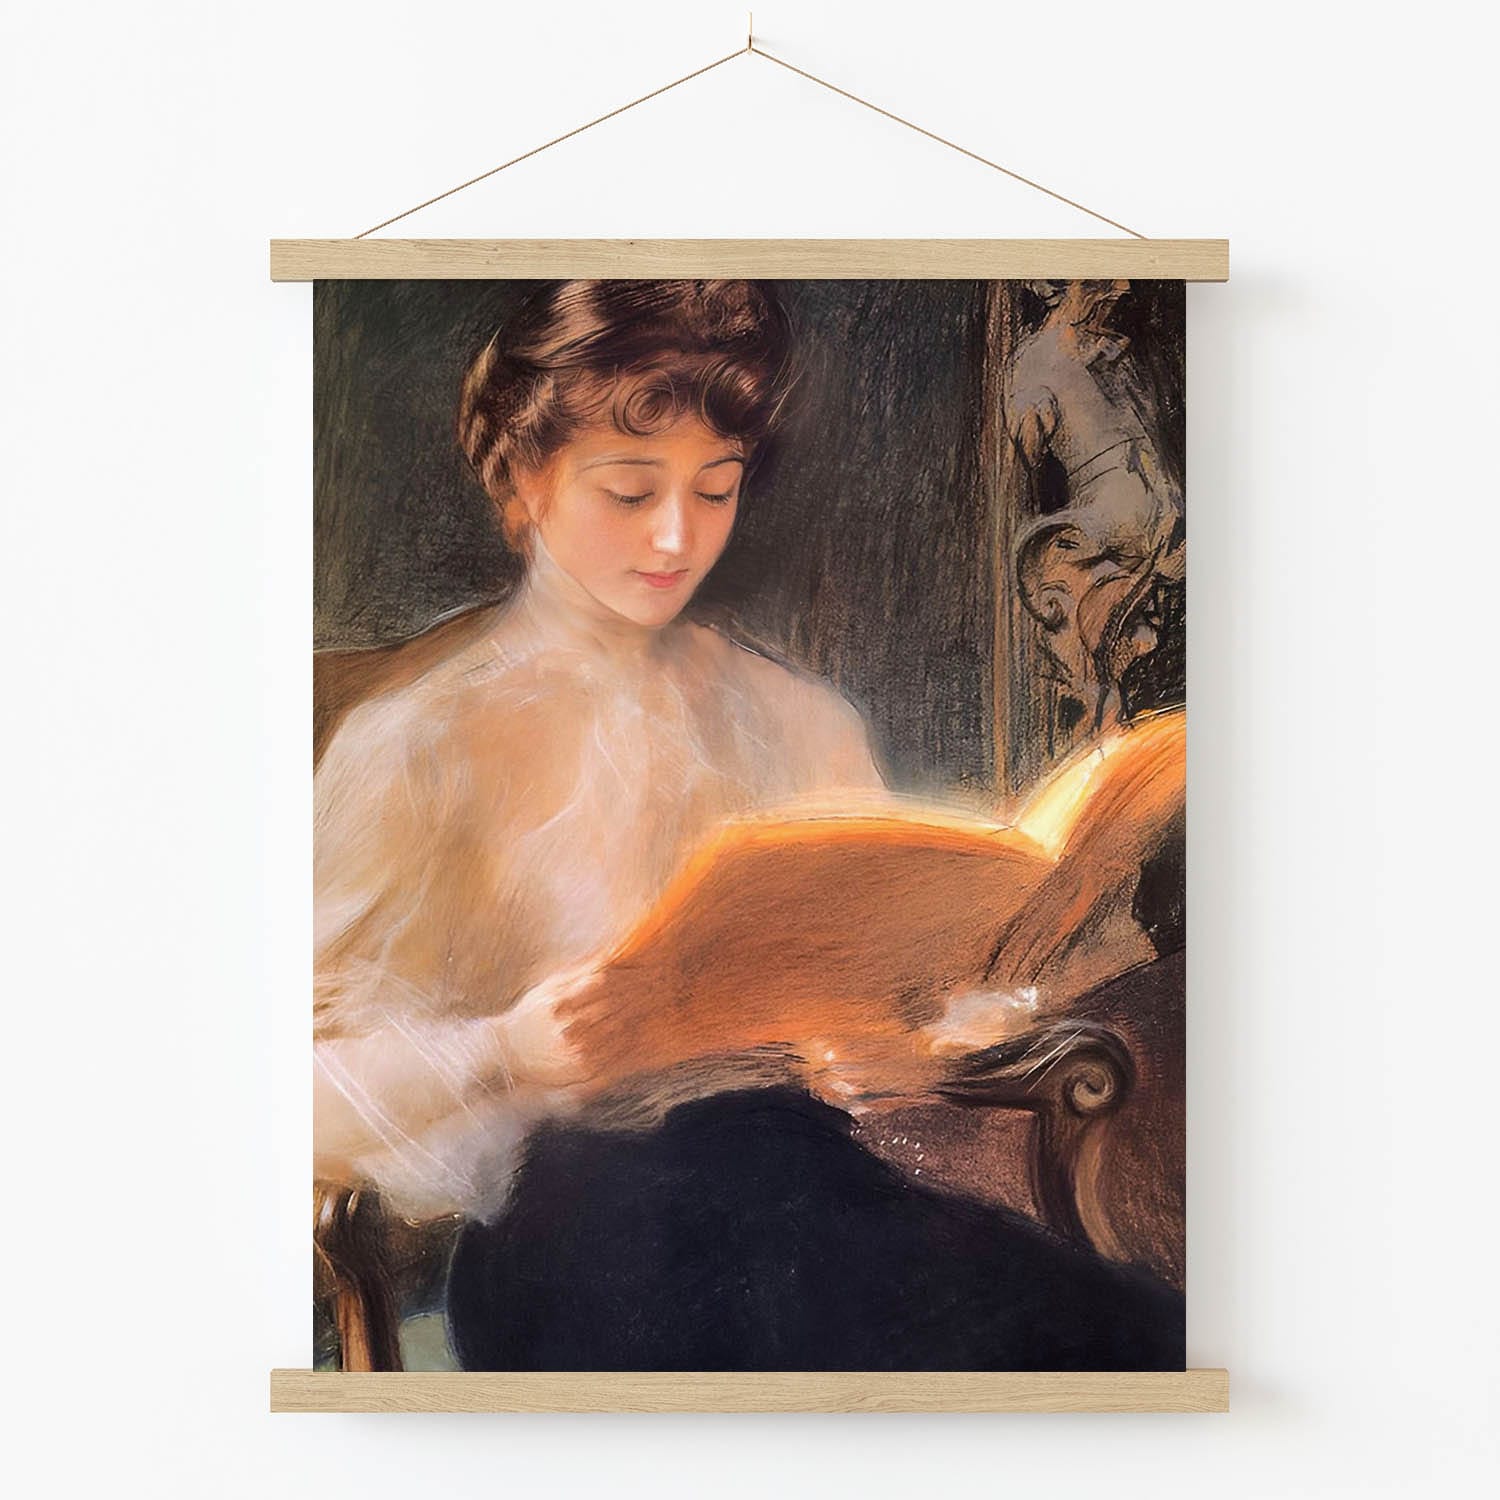 Aesthetic Reading Art Print in Wood Hanger Frame on Wall